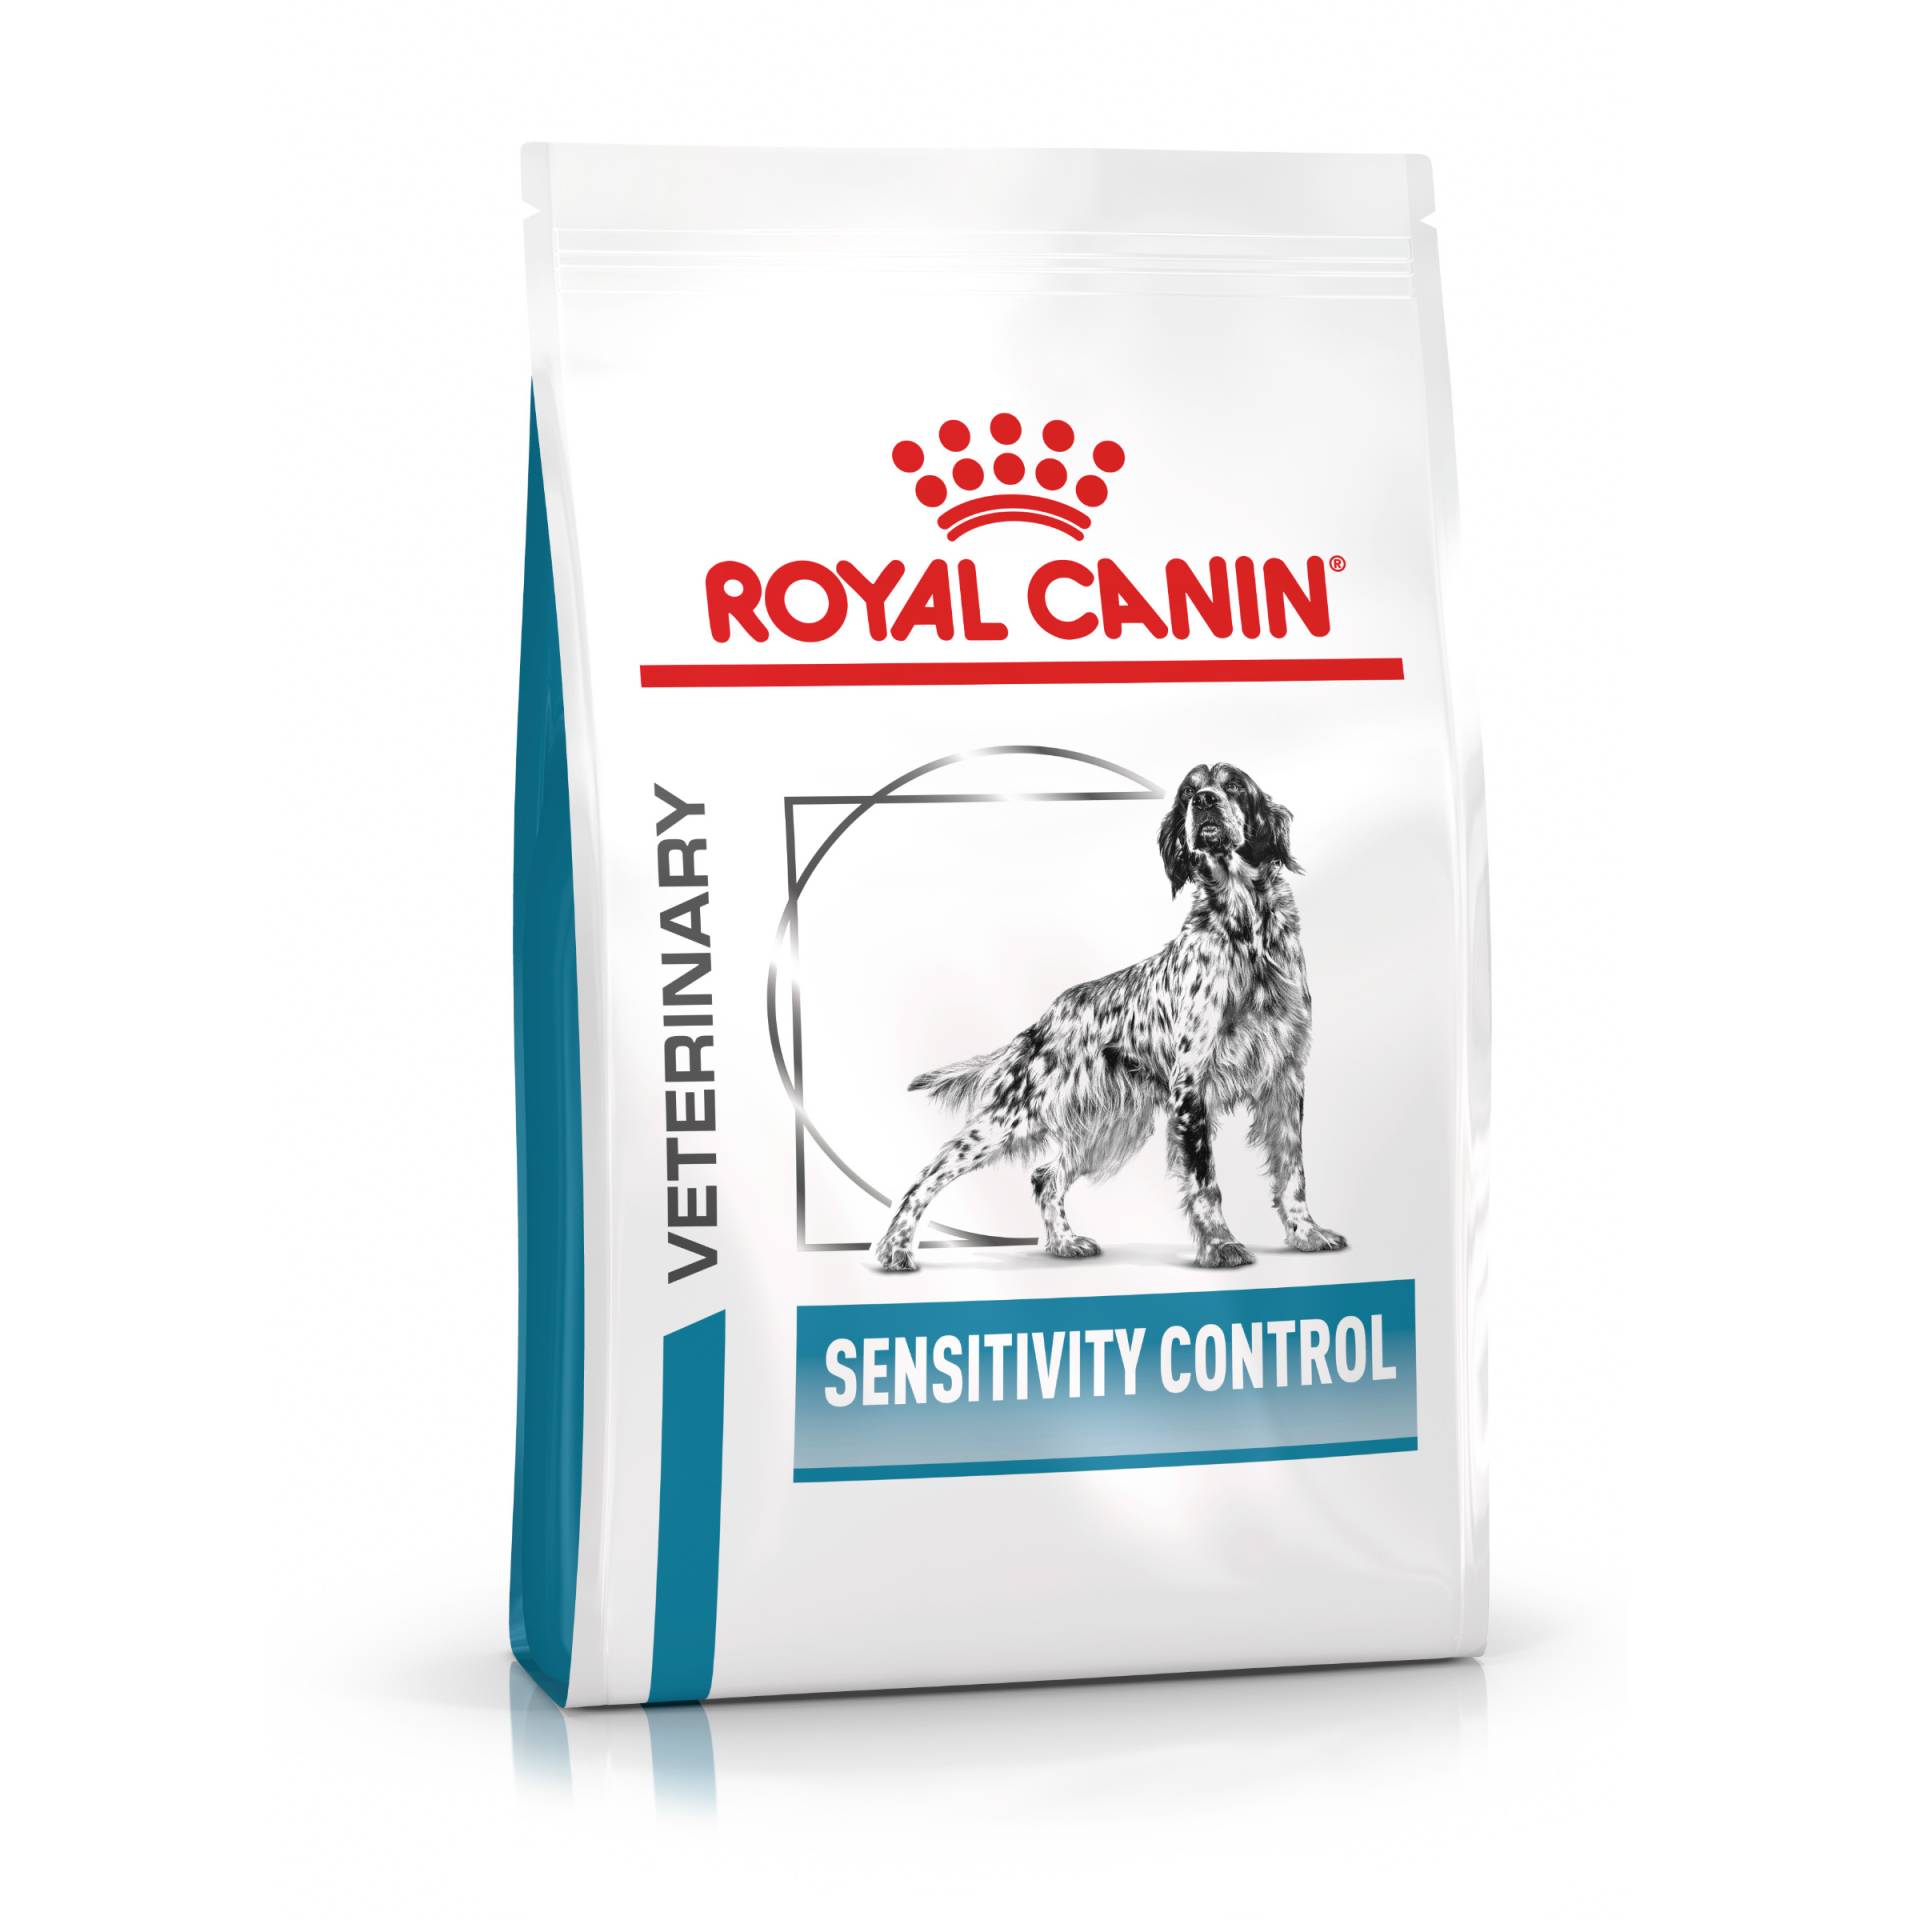 Royal Canin Veterinary Canine Sensitivity Control - 14 kg von Royal Canin Veterinary Diet